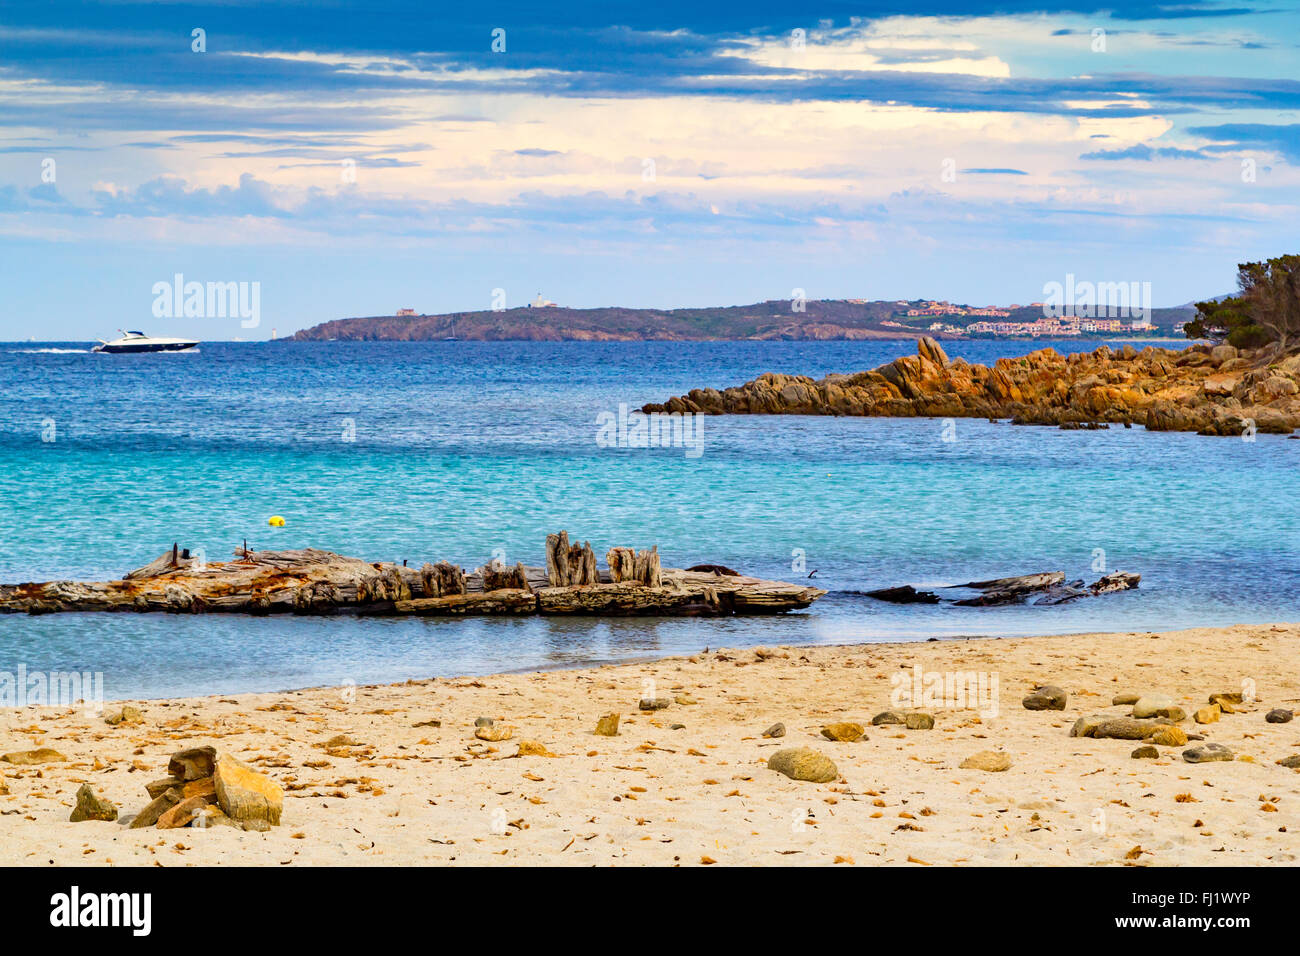 Caprera isle, relitto beach, La Maddalena national park, Sardinia, Italy Stock Photo